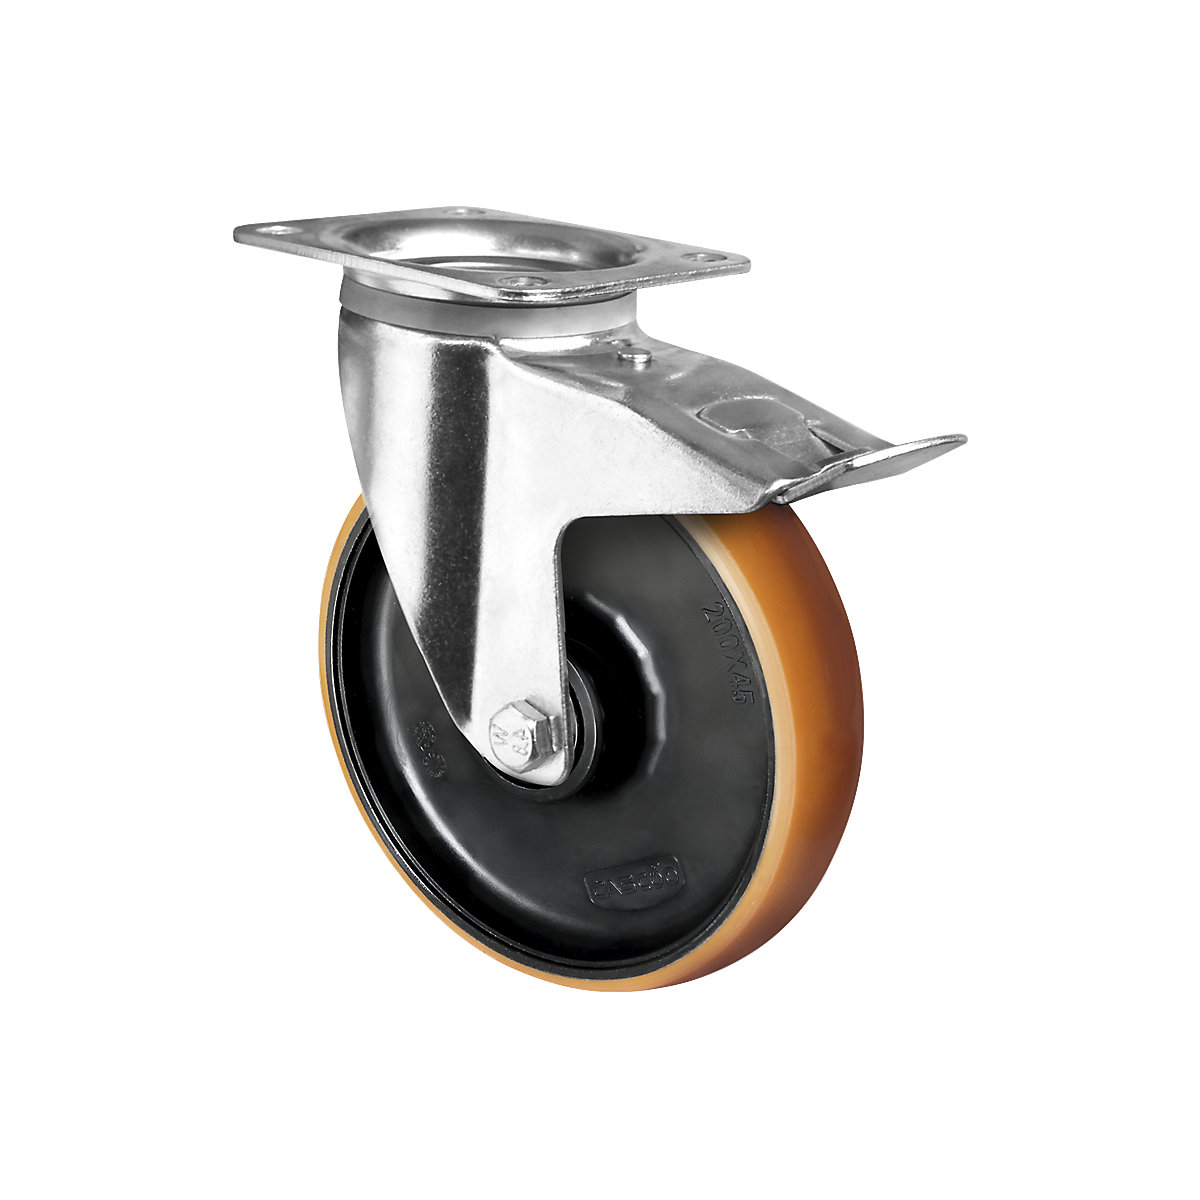 Roulette polyuréthane marron sur jante polyamide, Ø x largeur roulette 125 x 50 mm, roulette pivotante avec blocage double